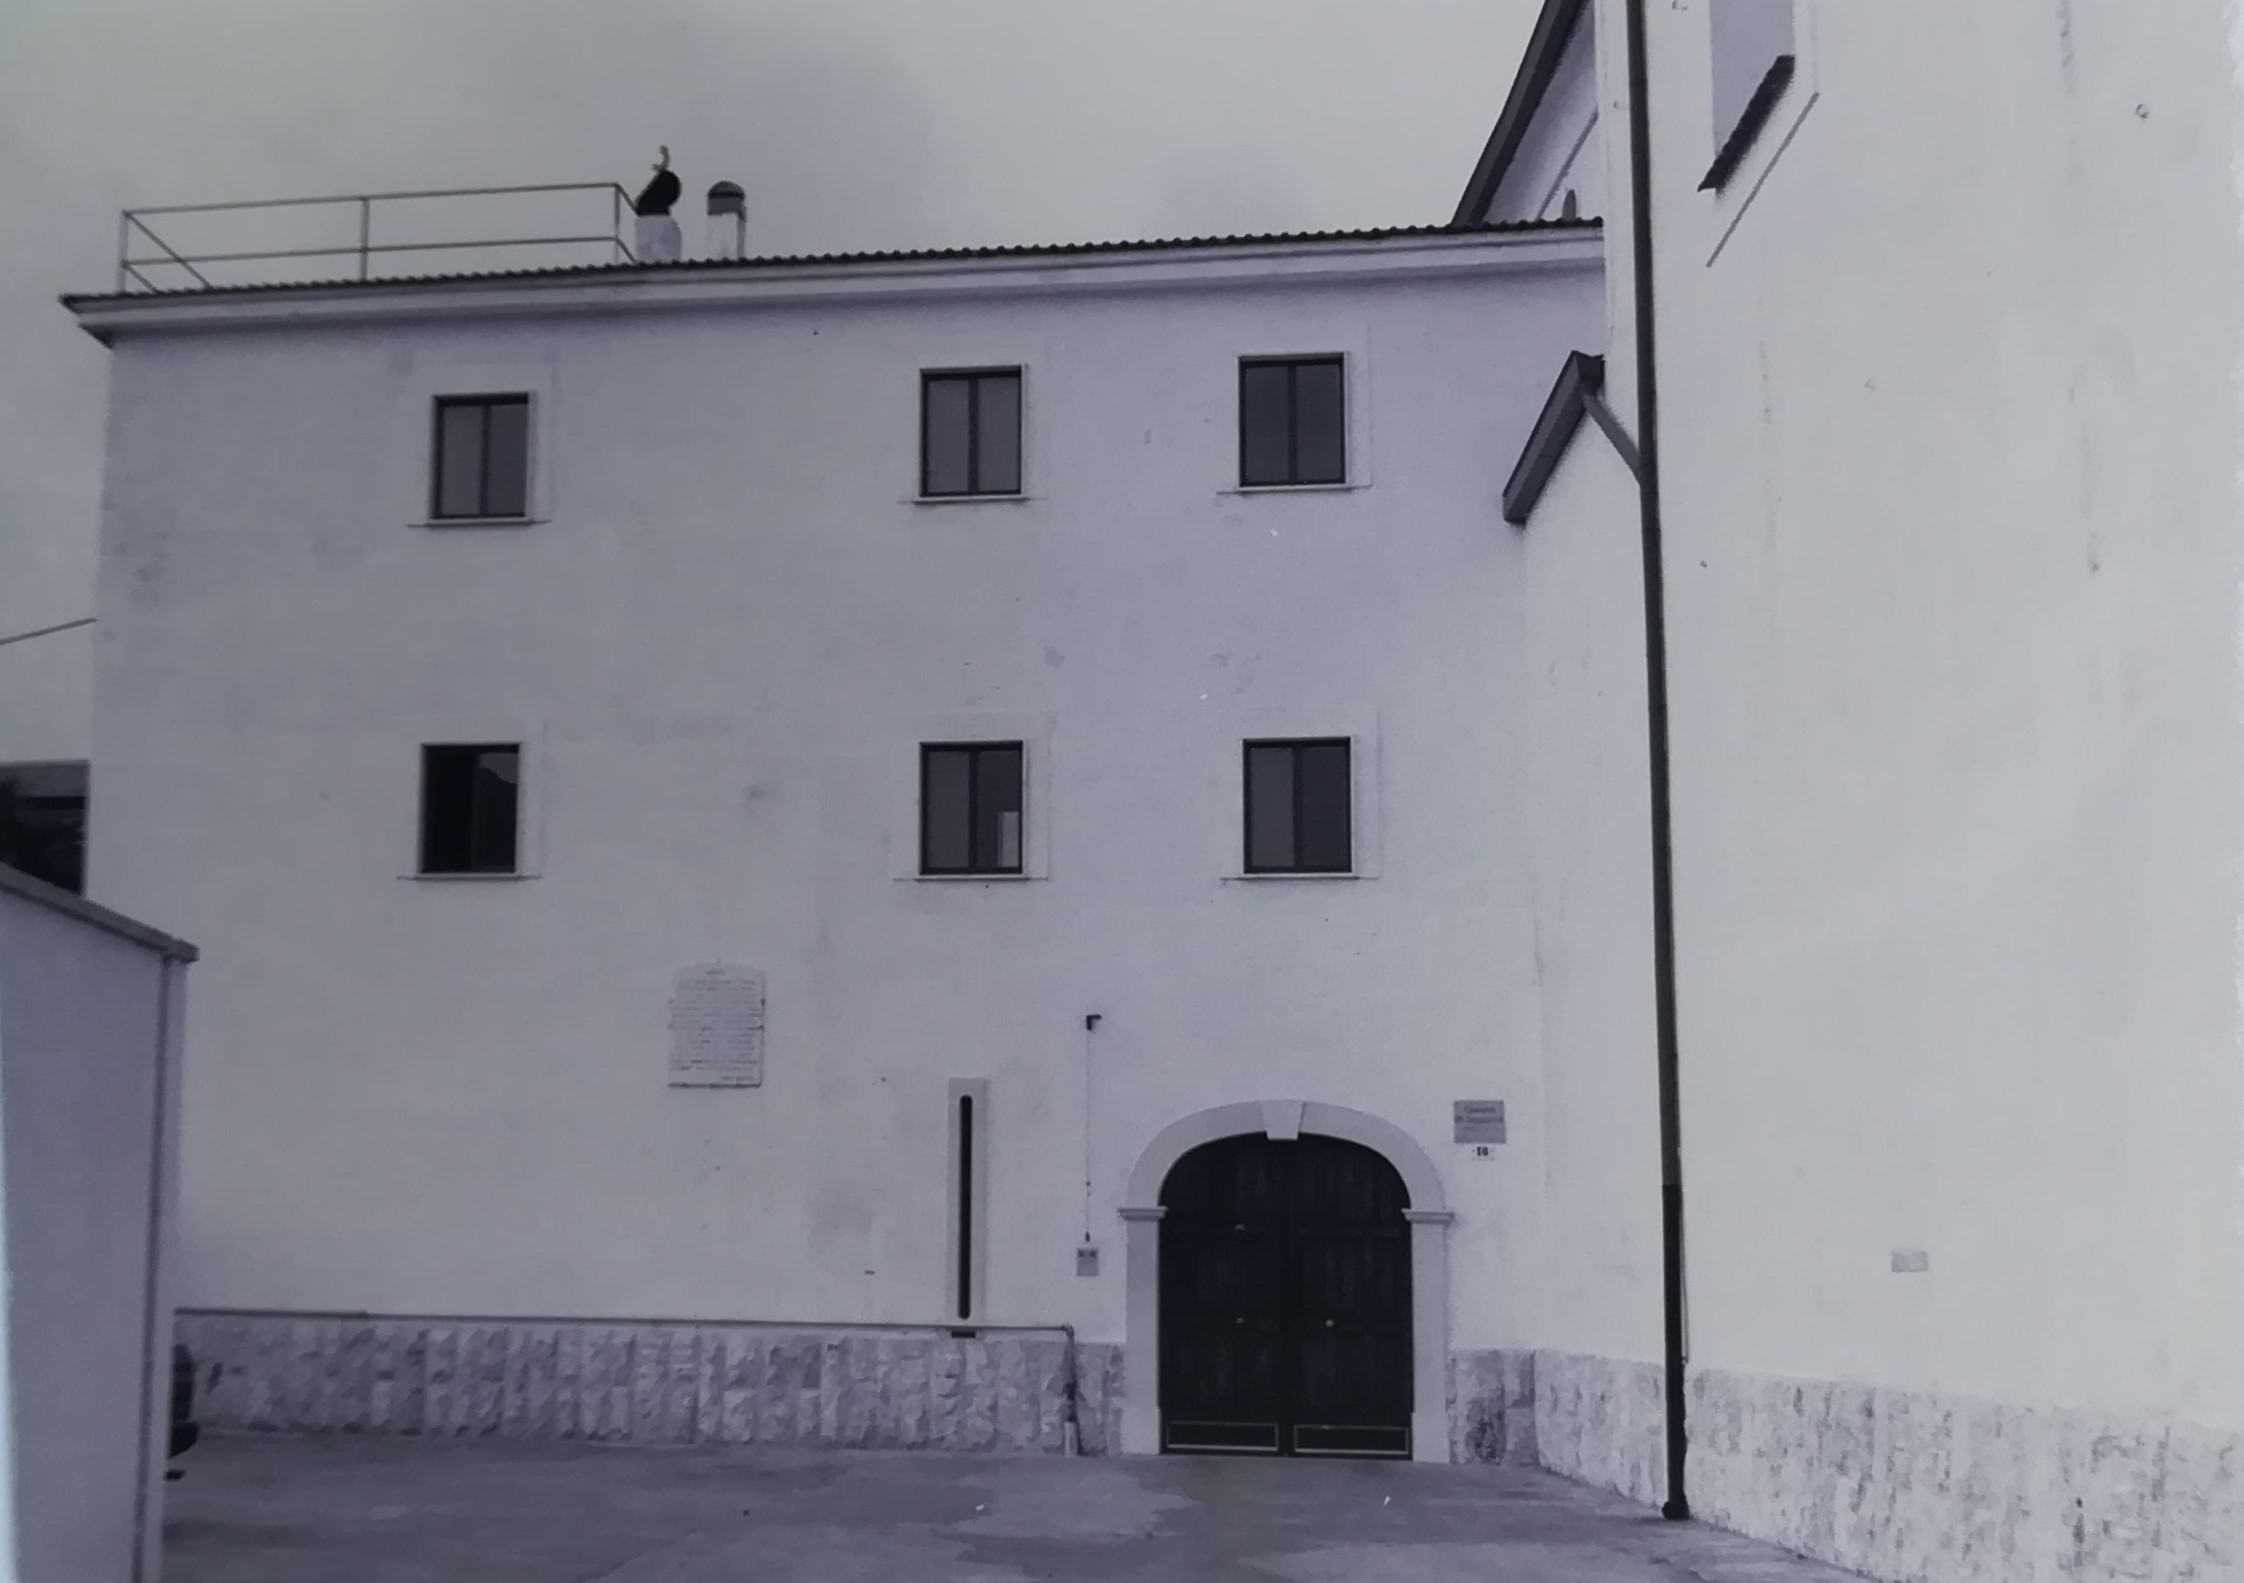 Convento dei frati minori cappuccini (convento, cappuccino) - Arienzo (CE)  (XVI)